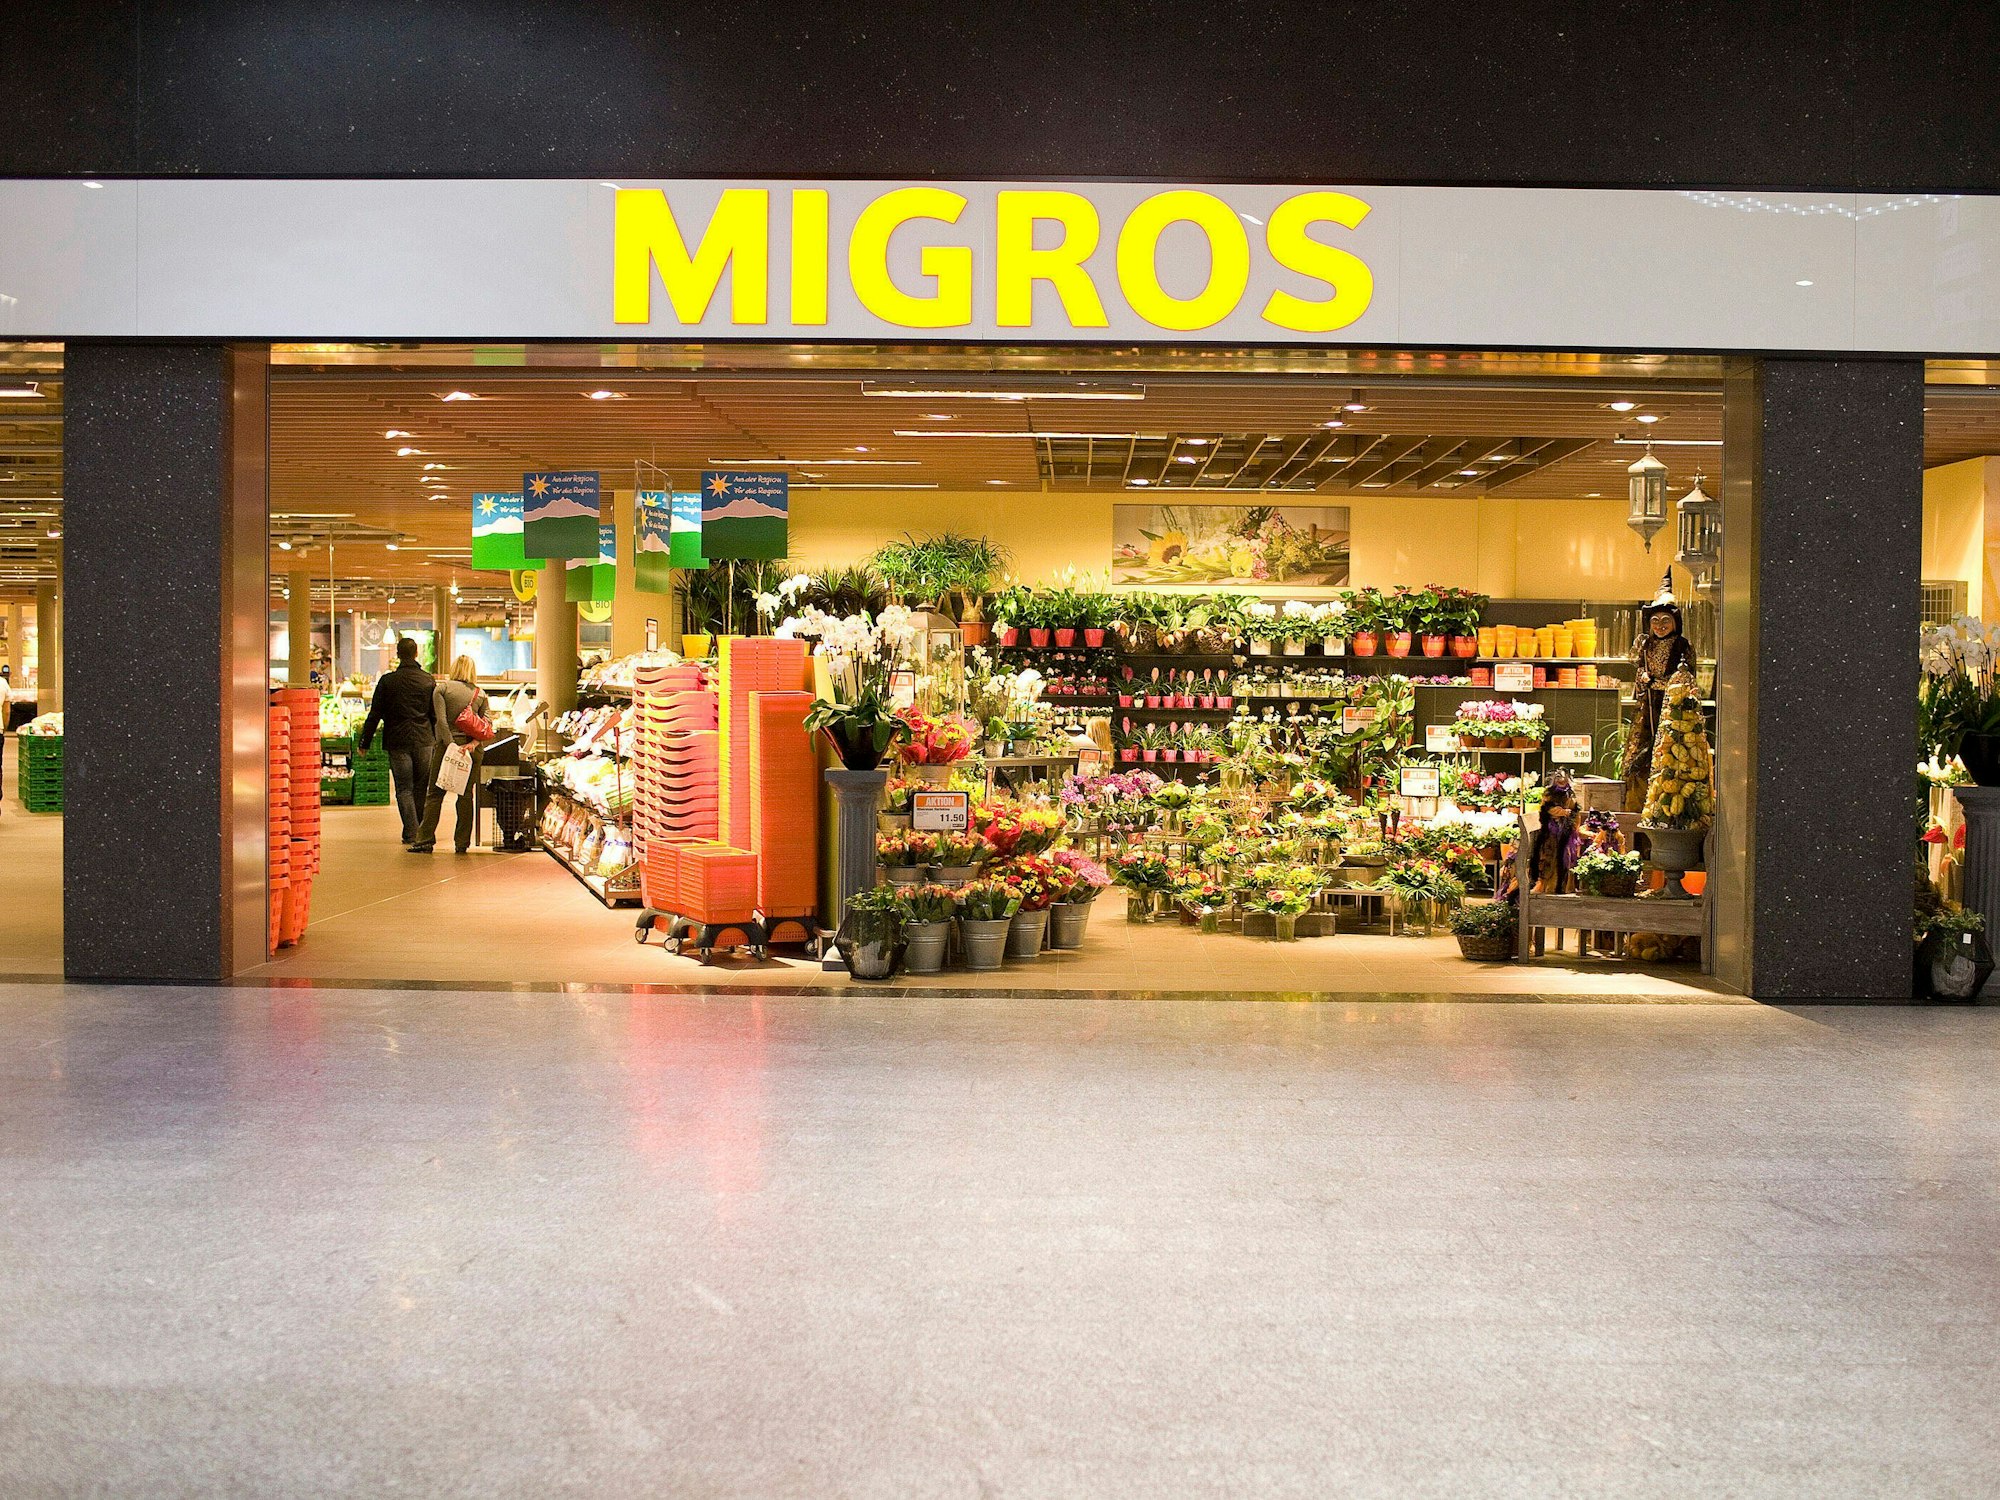 Der Eingangsbereich einer Migros-Filiale.